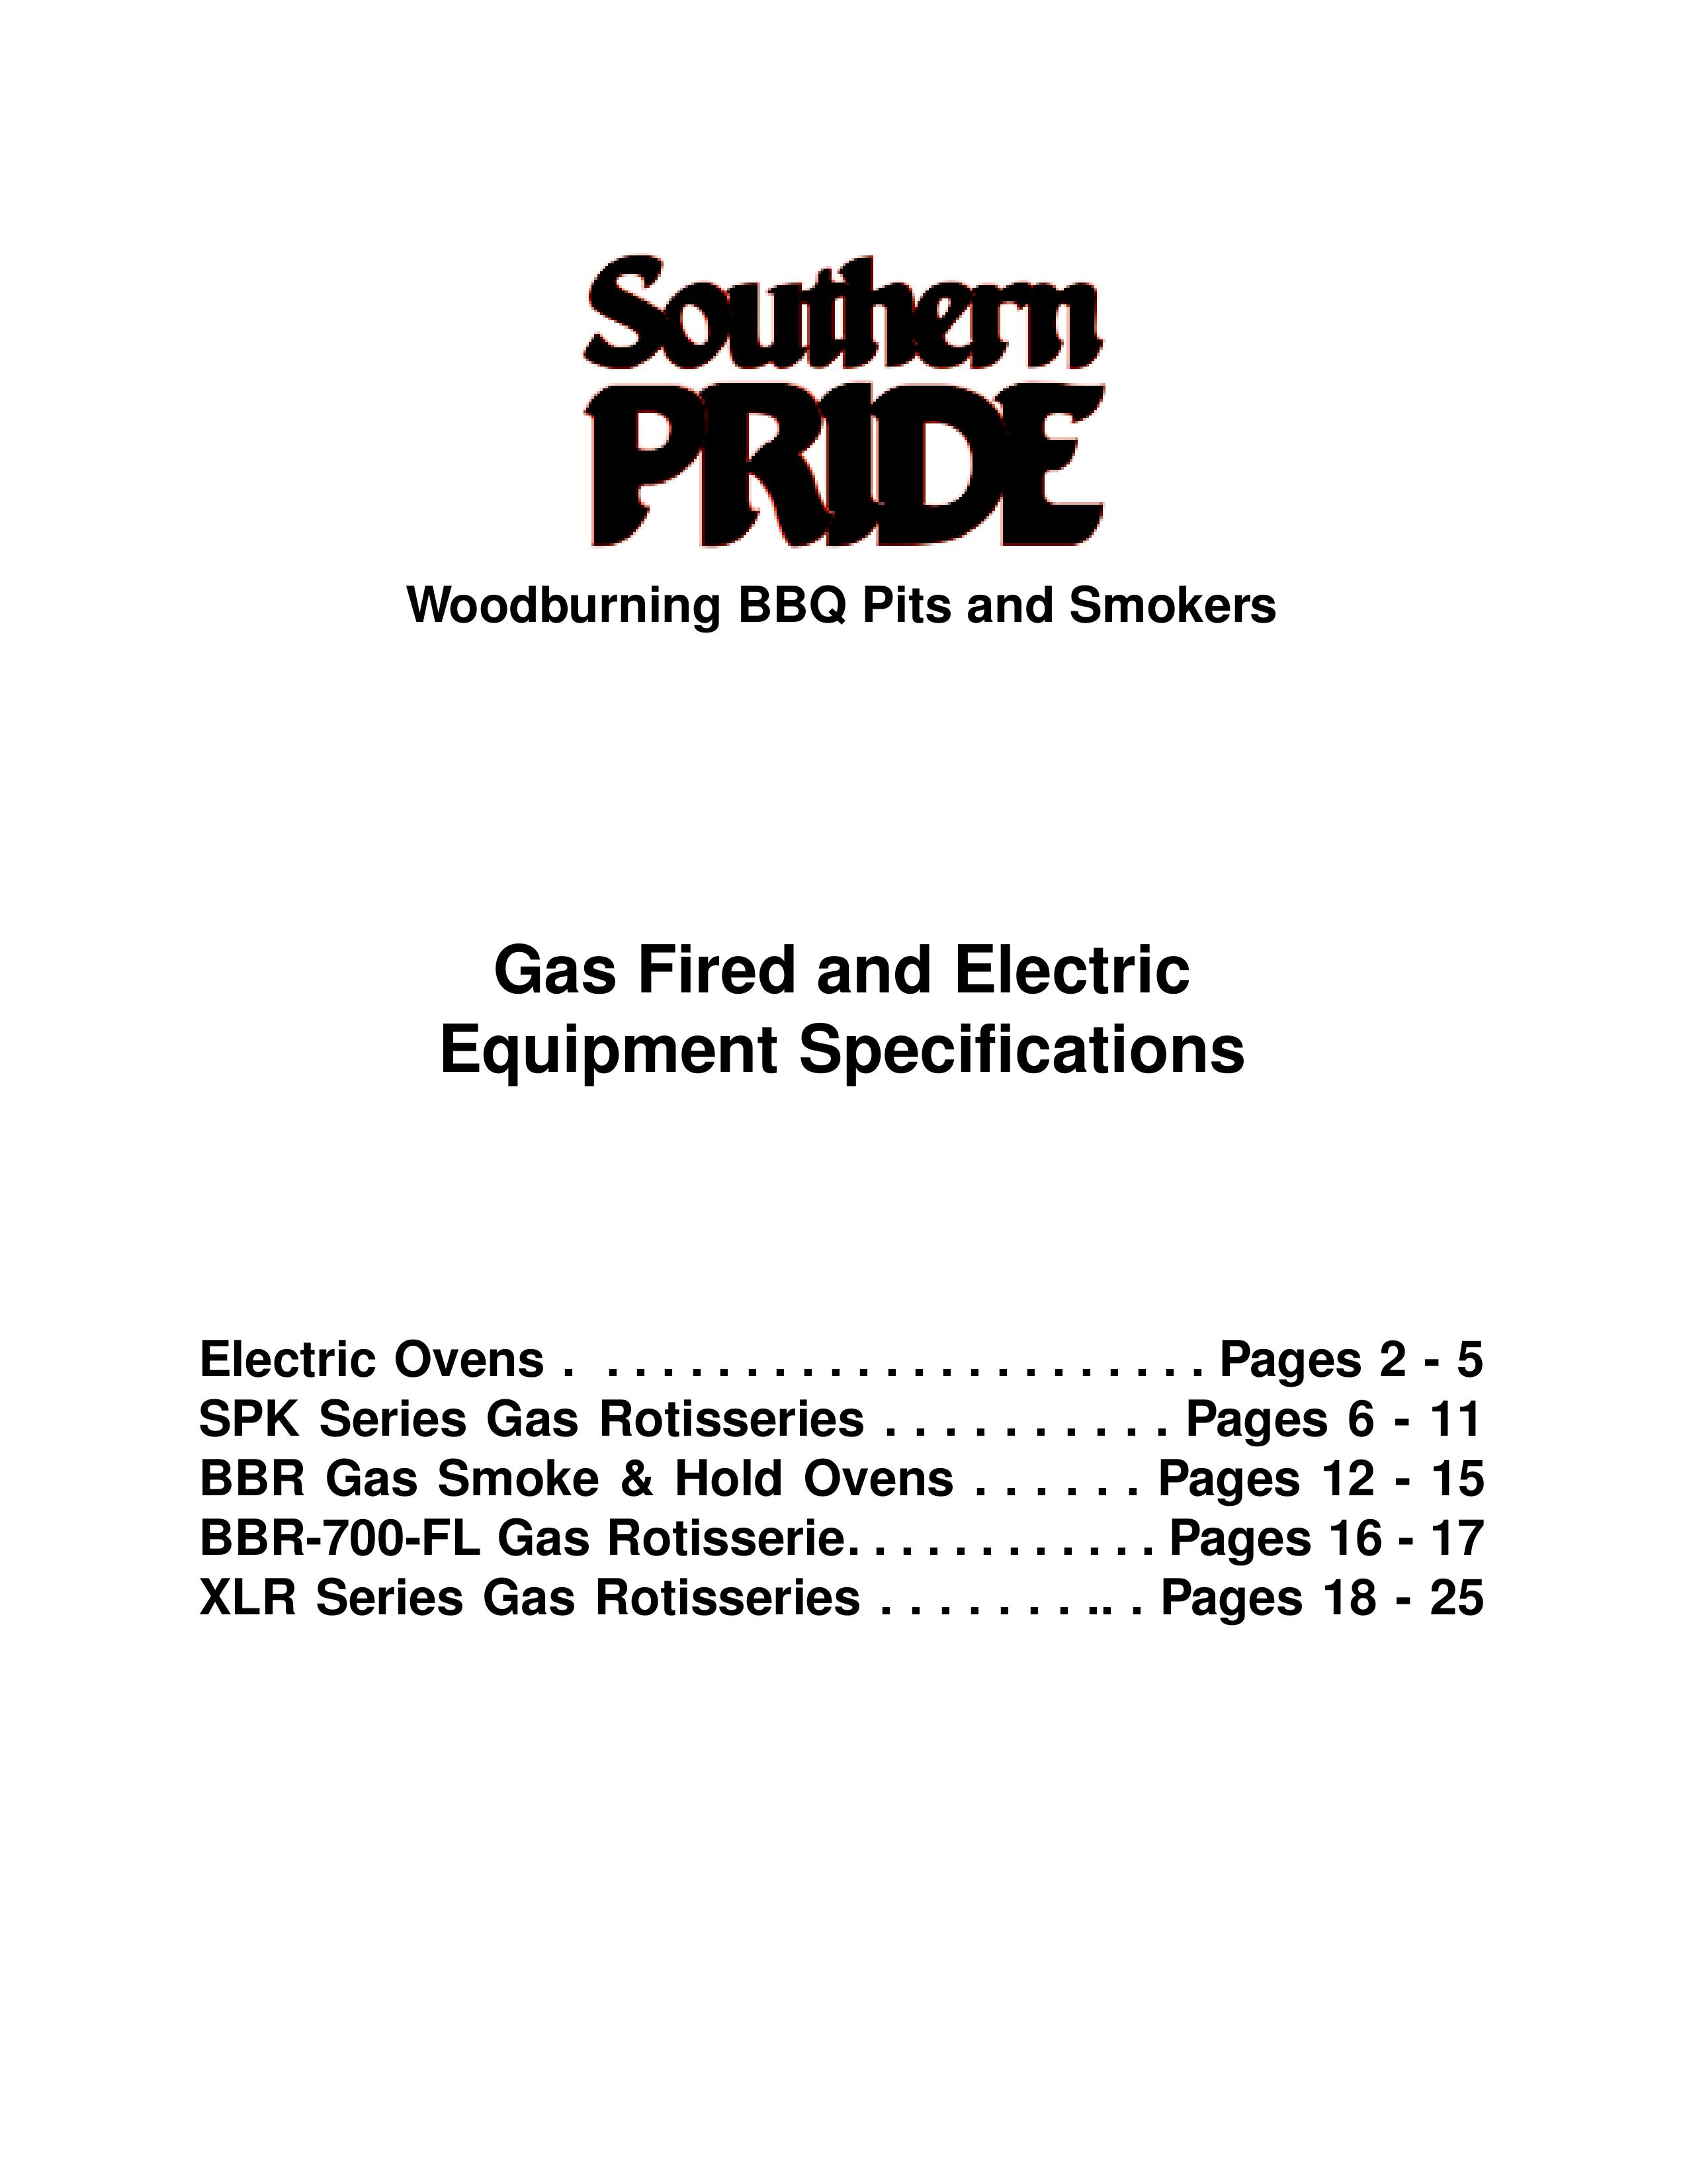 Southern Pride XLR-1600-4-SL Smoker User Manual